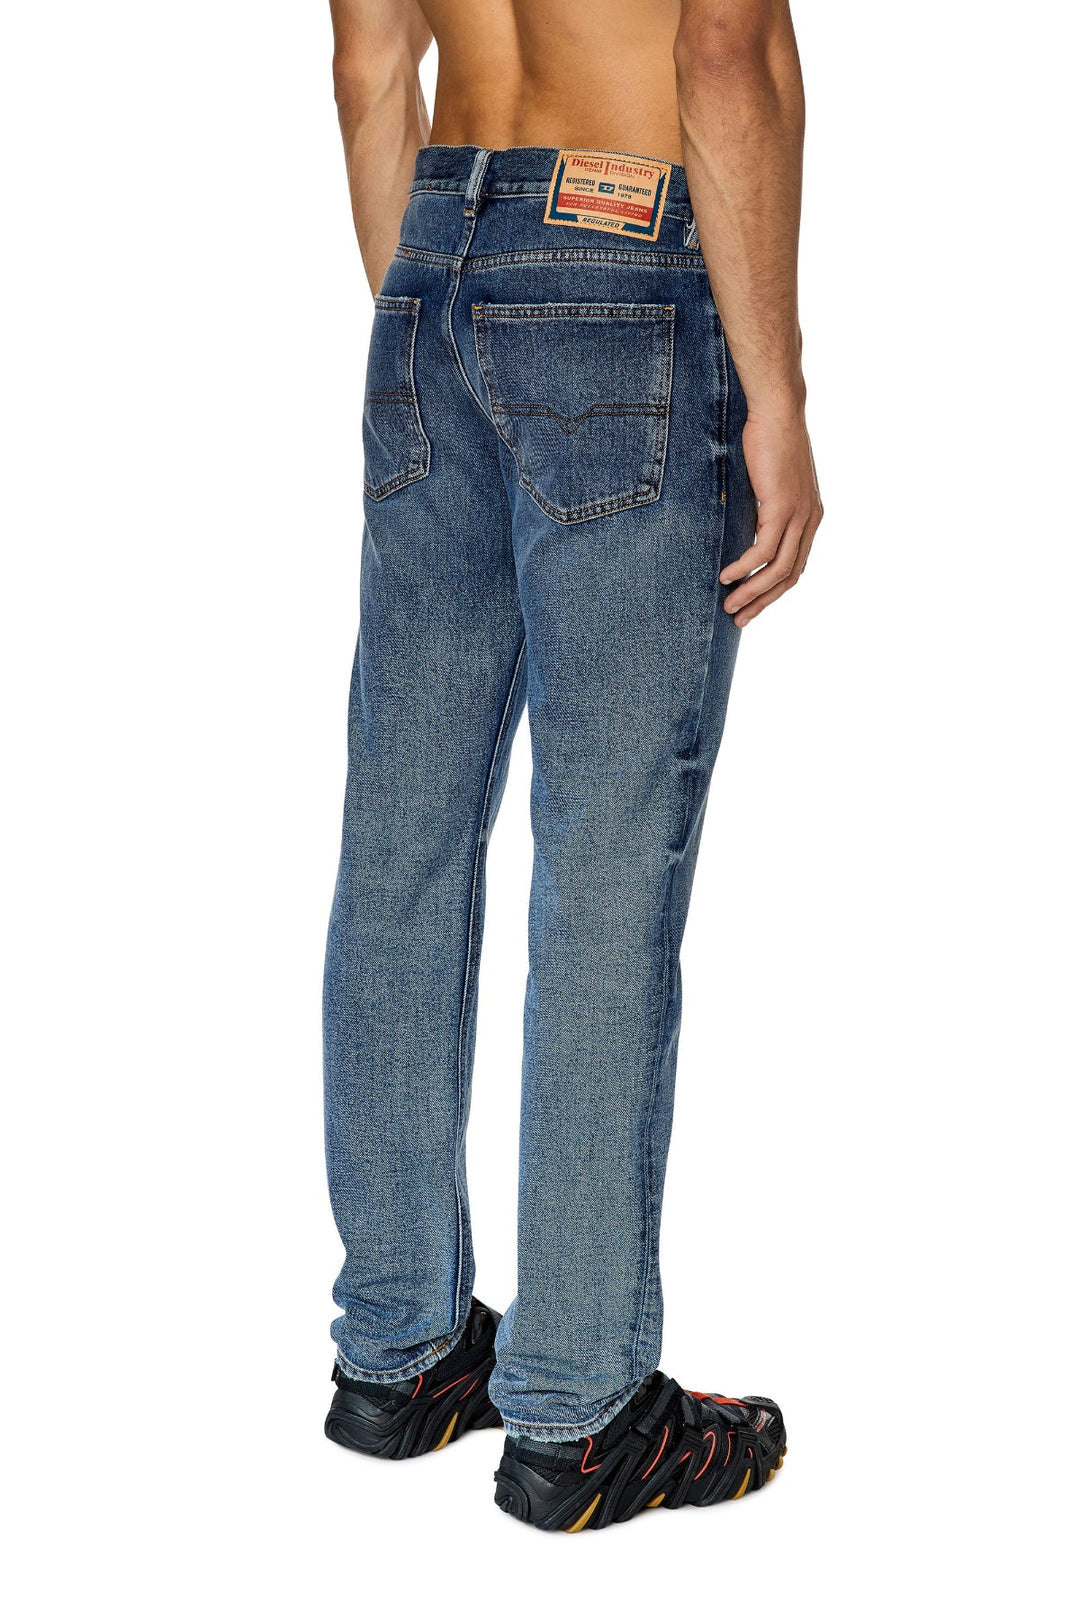 Straight Jeans 1995 D-Sark 09e68